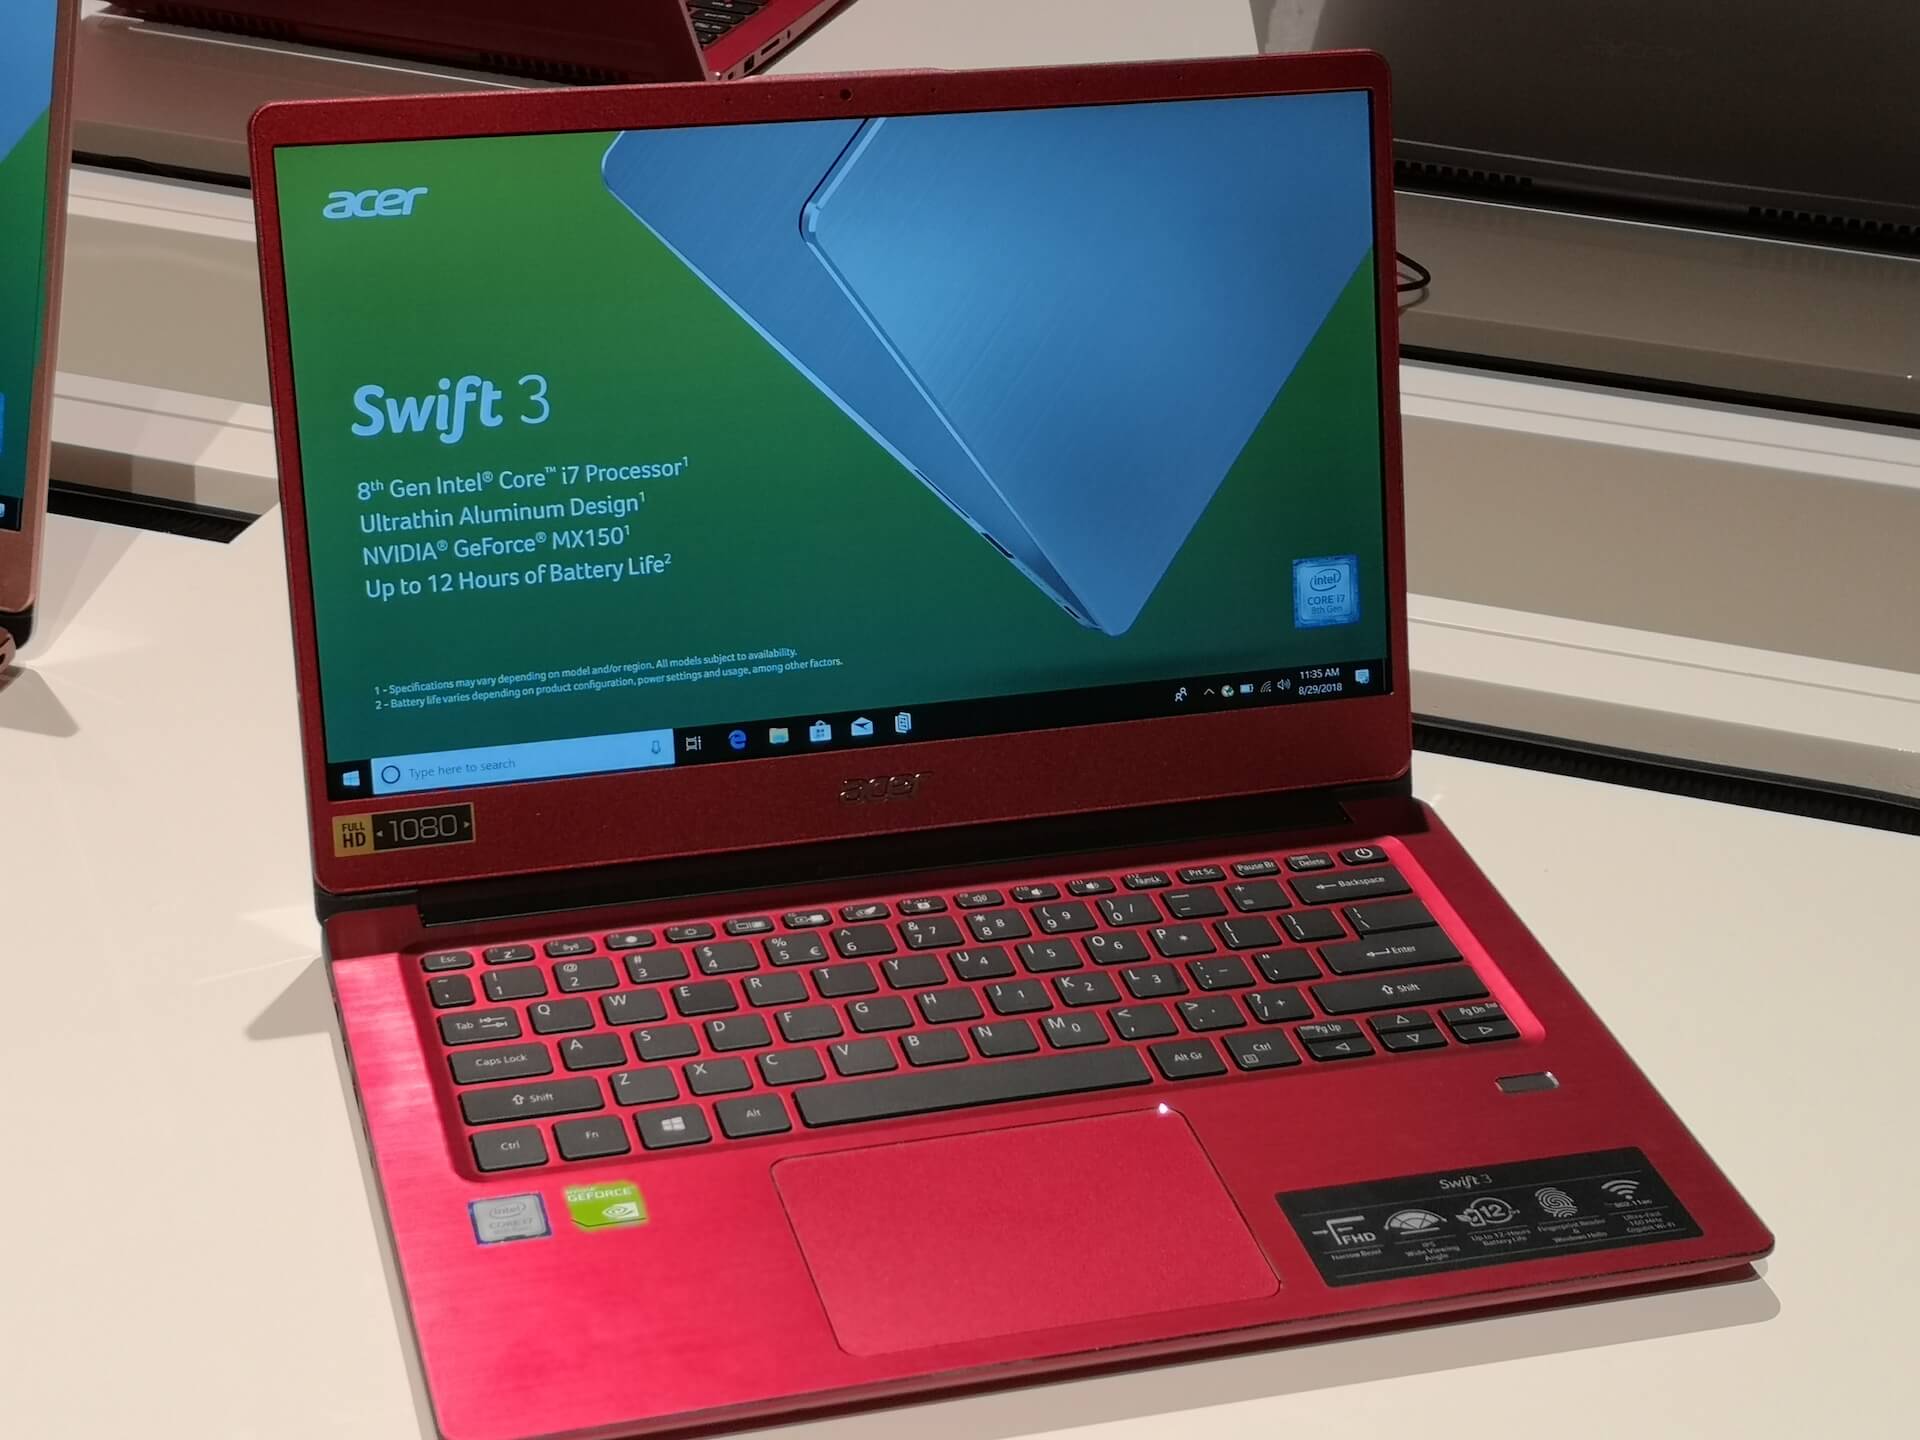 10 Best Chosen Laptops In 2018: Acer Swift 3 Laptop